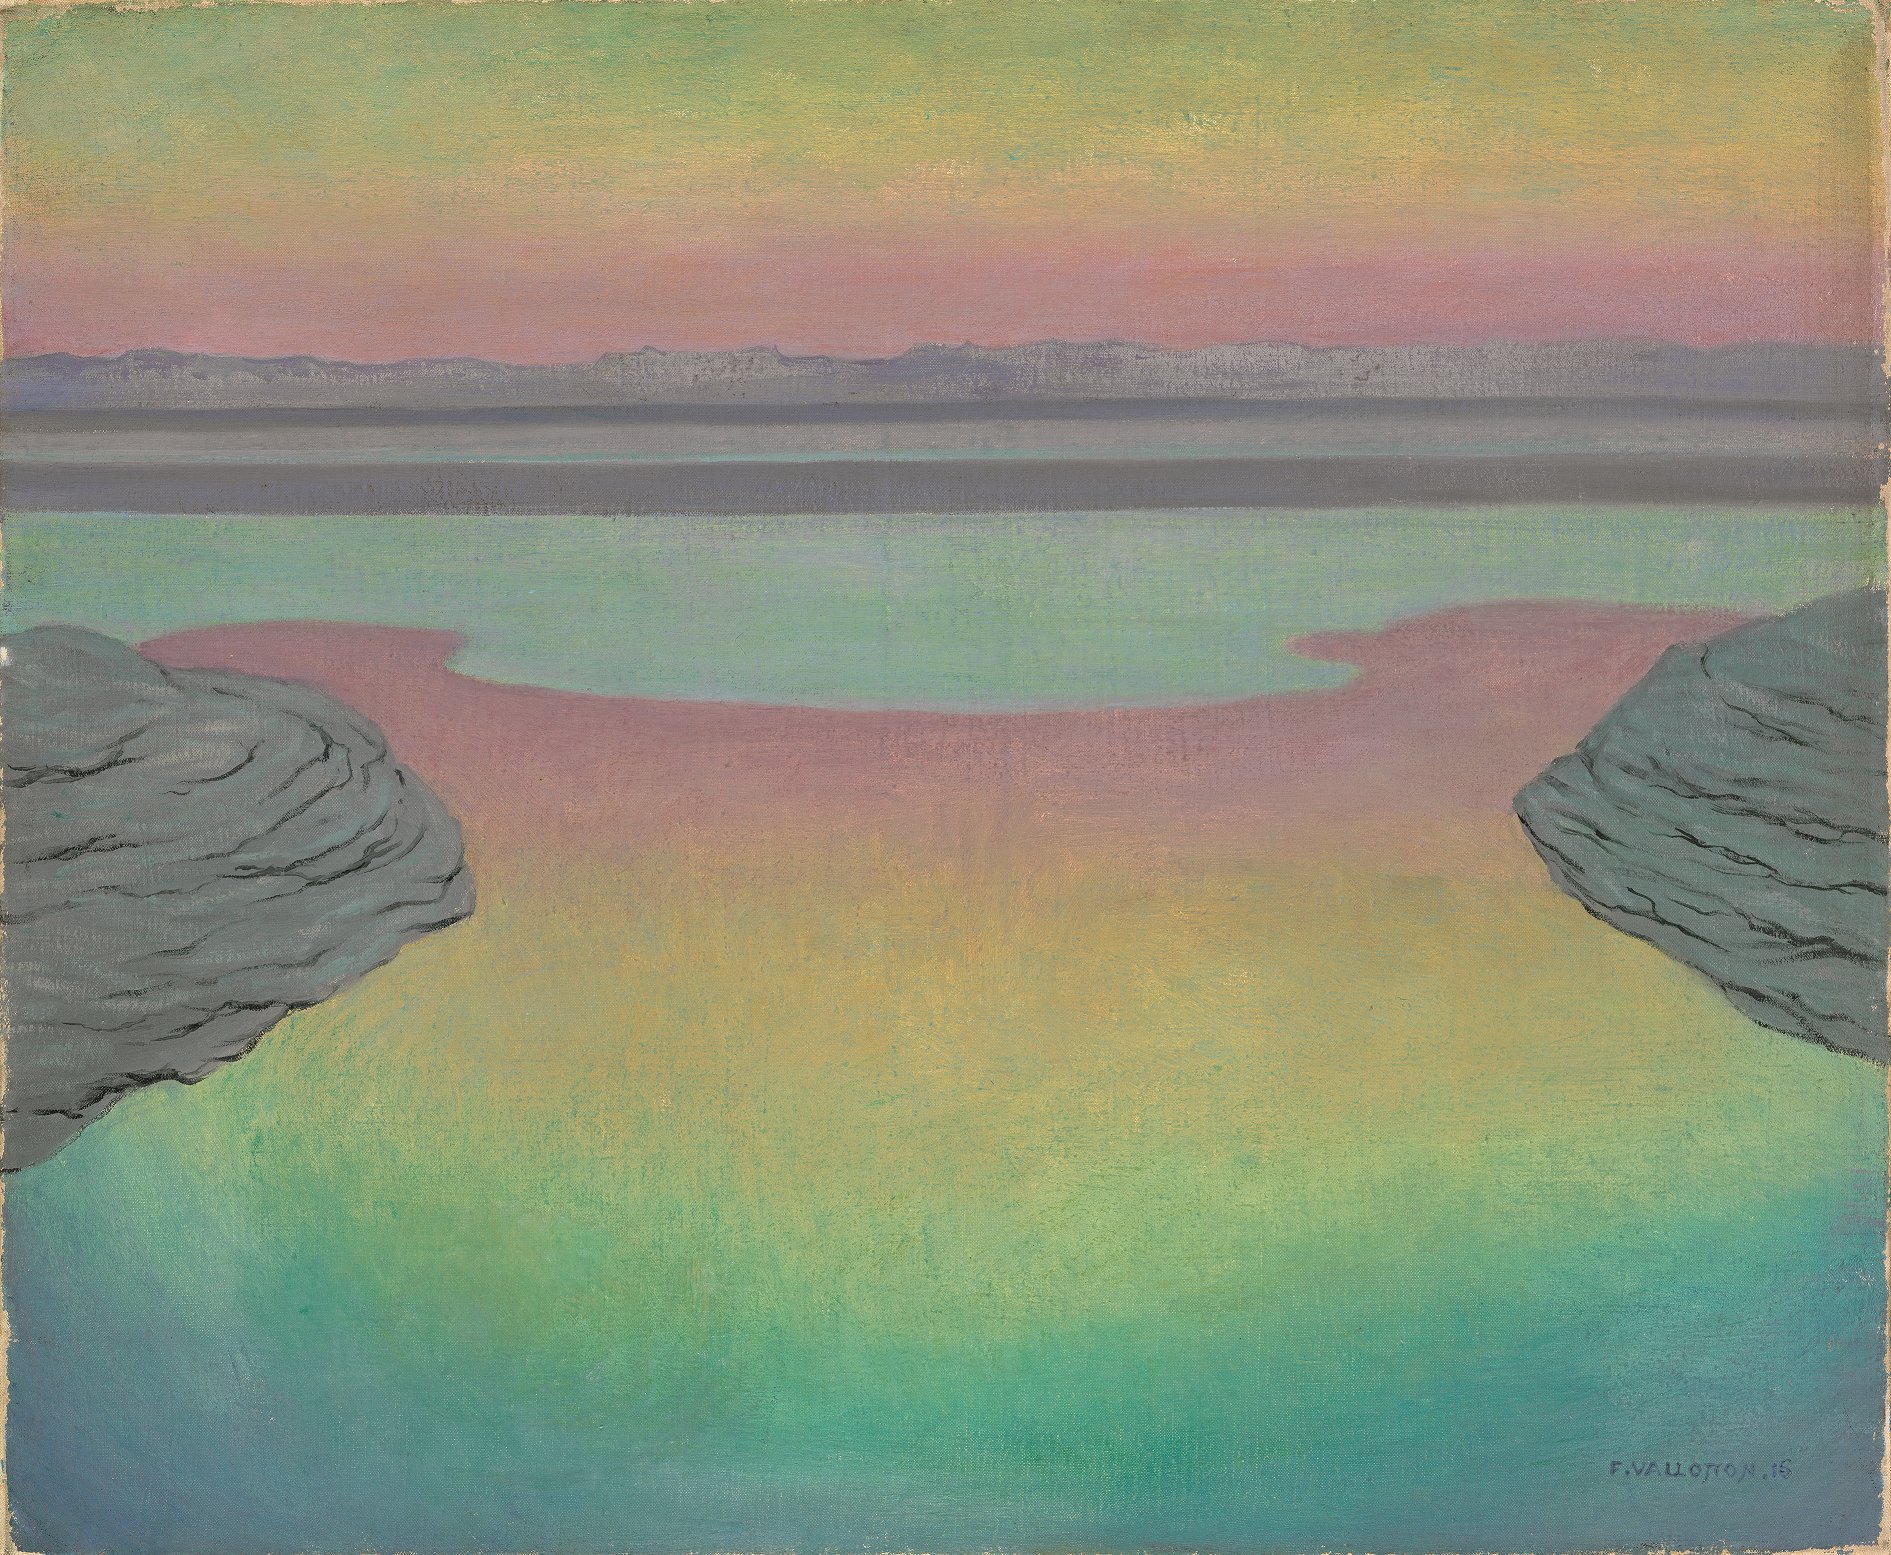 Akşam Işığında Yüksek Gelgit (orig. "High Tide in Evening Light") by Félix Vallotton - 1915 - 61 × 73 cm 